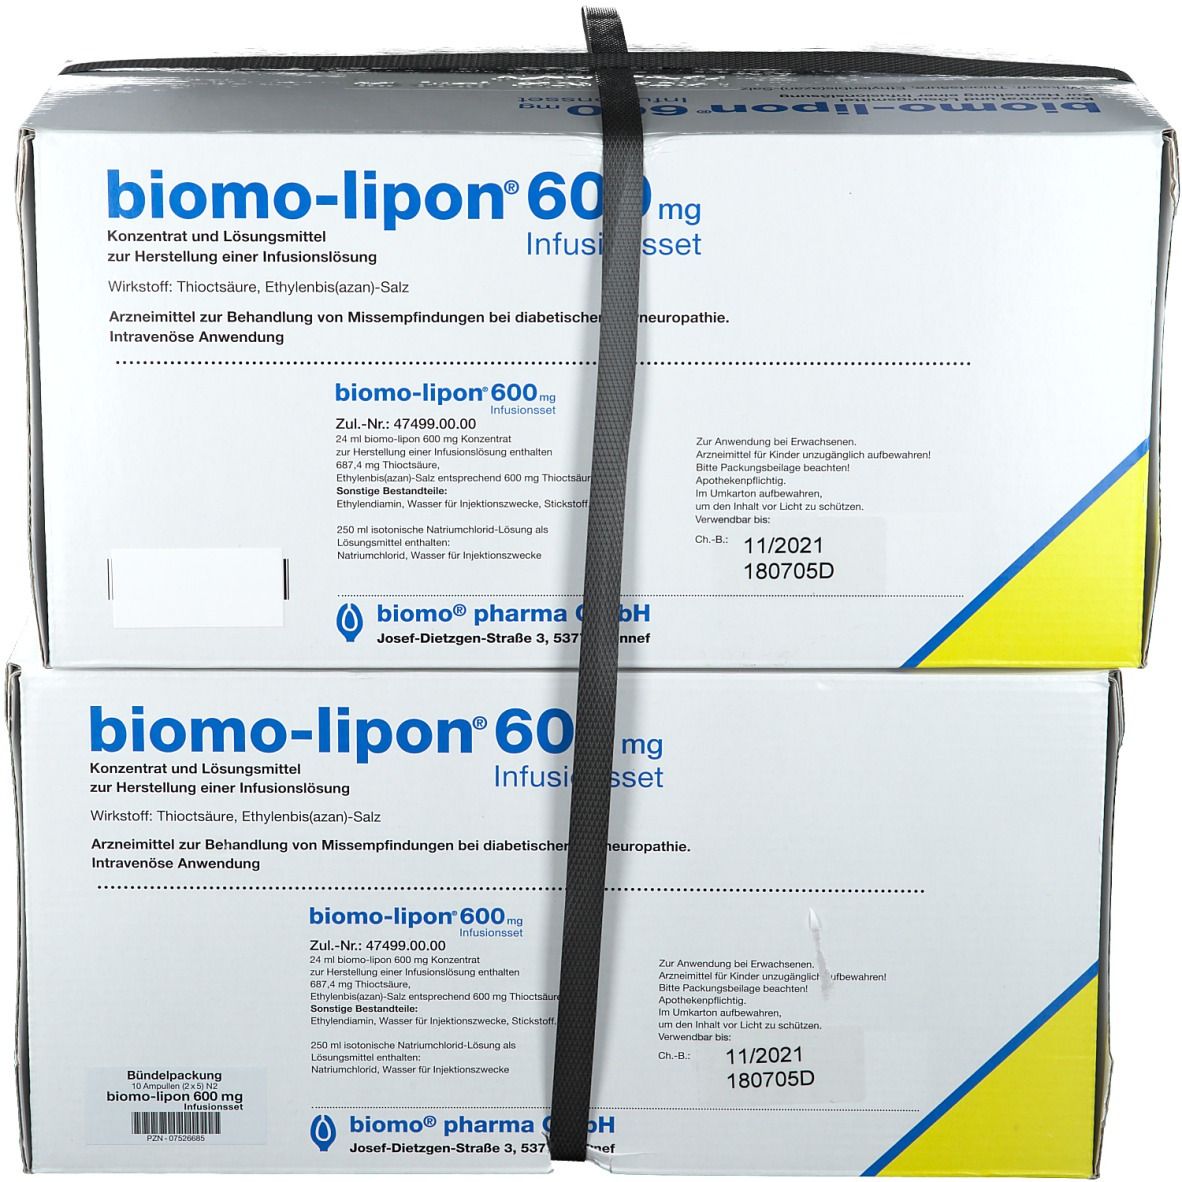 Biomo Lipon 600 mg Infusionsset Amp.